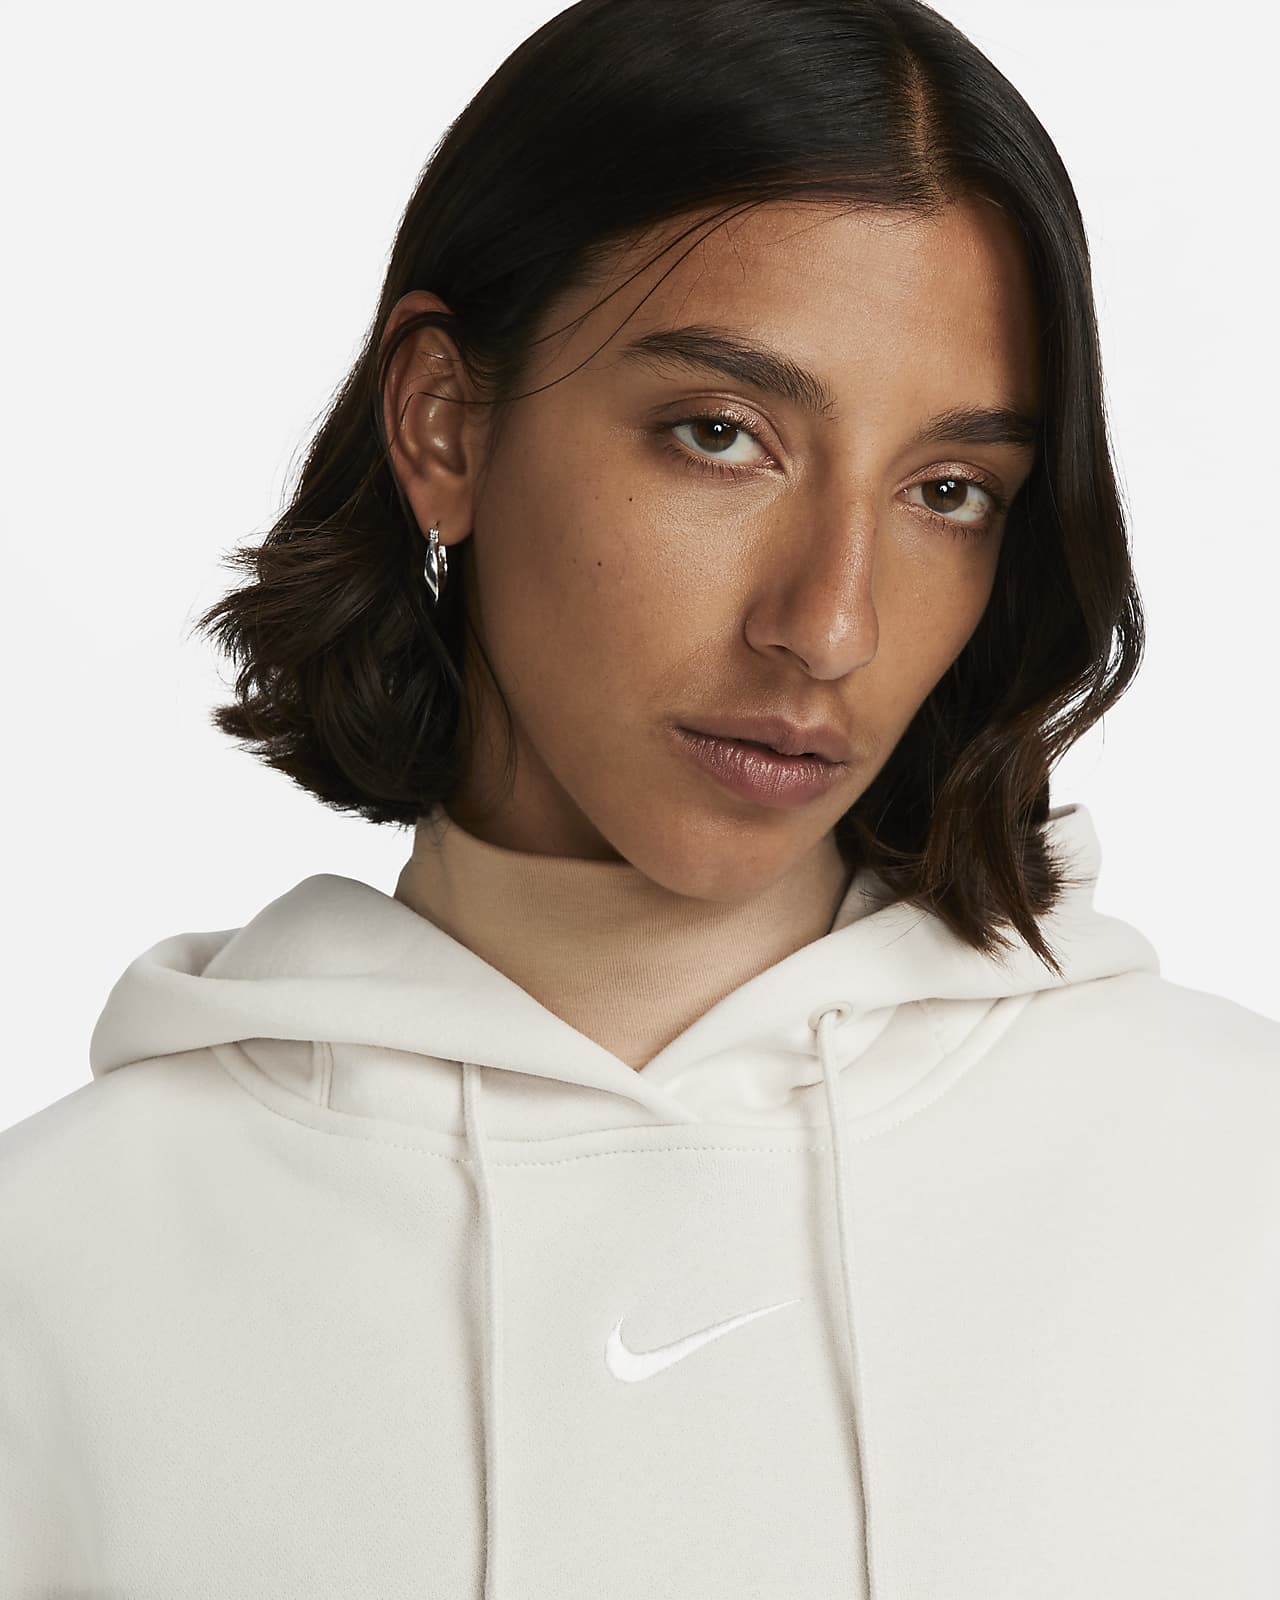 Nike Sportswear Women's Oversized Fleece Pullover Hoodie.